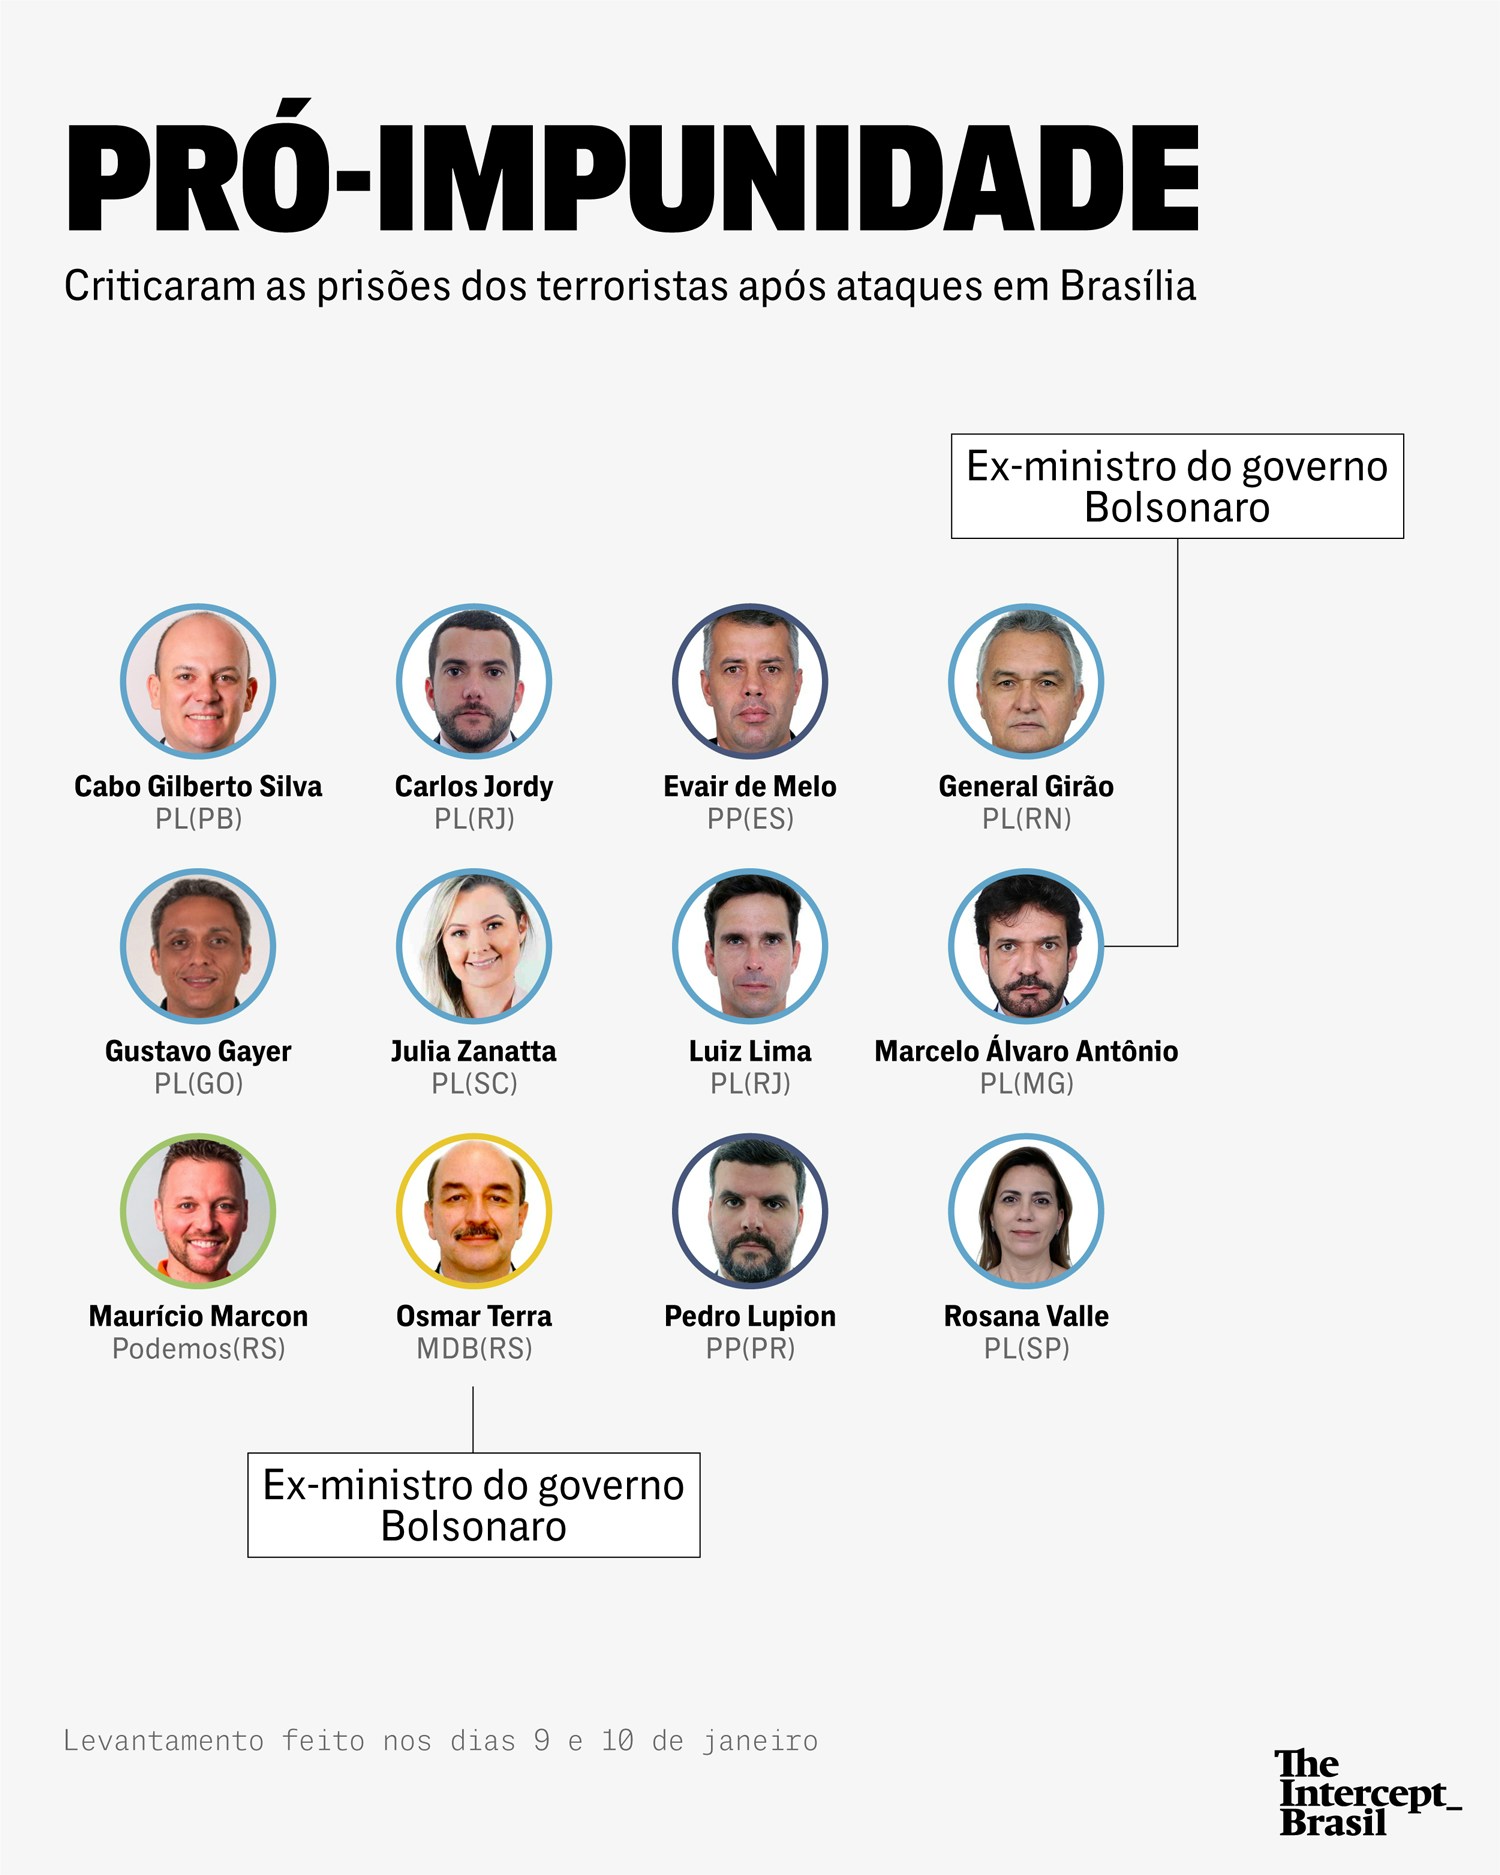 deputados pro impunidade - Cabo Gilberto e mais 45 deputados federais são citados em levantamento dos que apoiaram terrorismo em Brasília